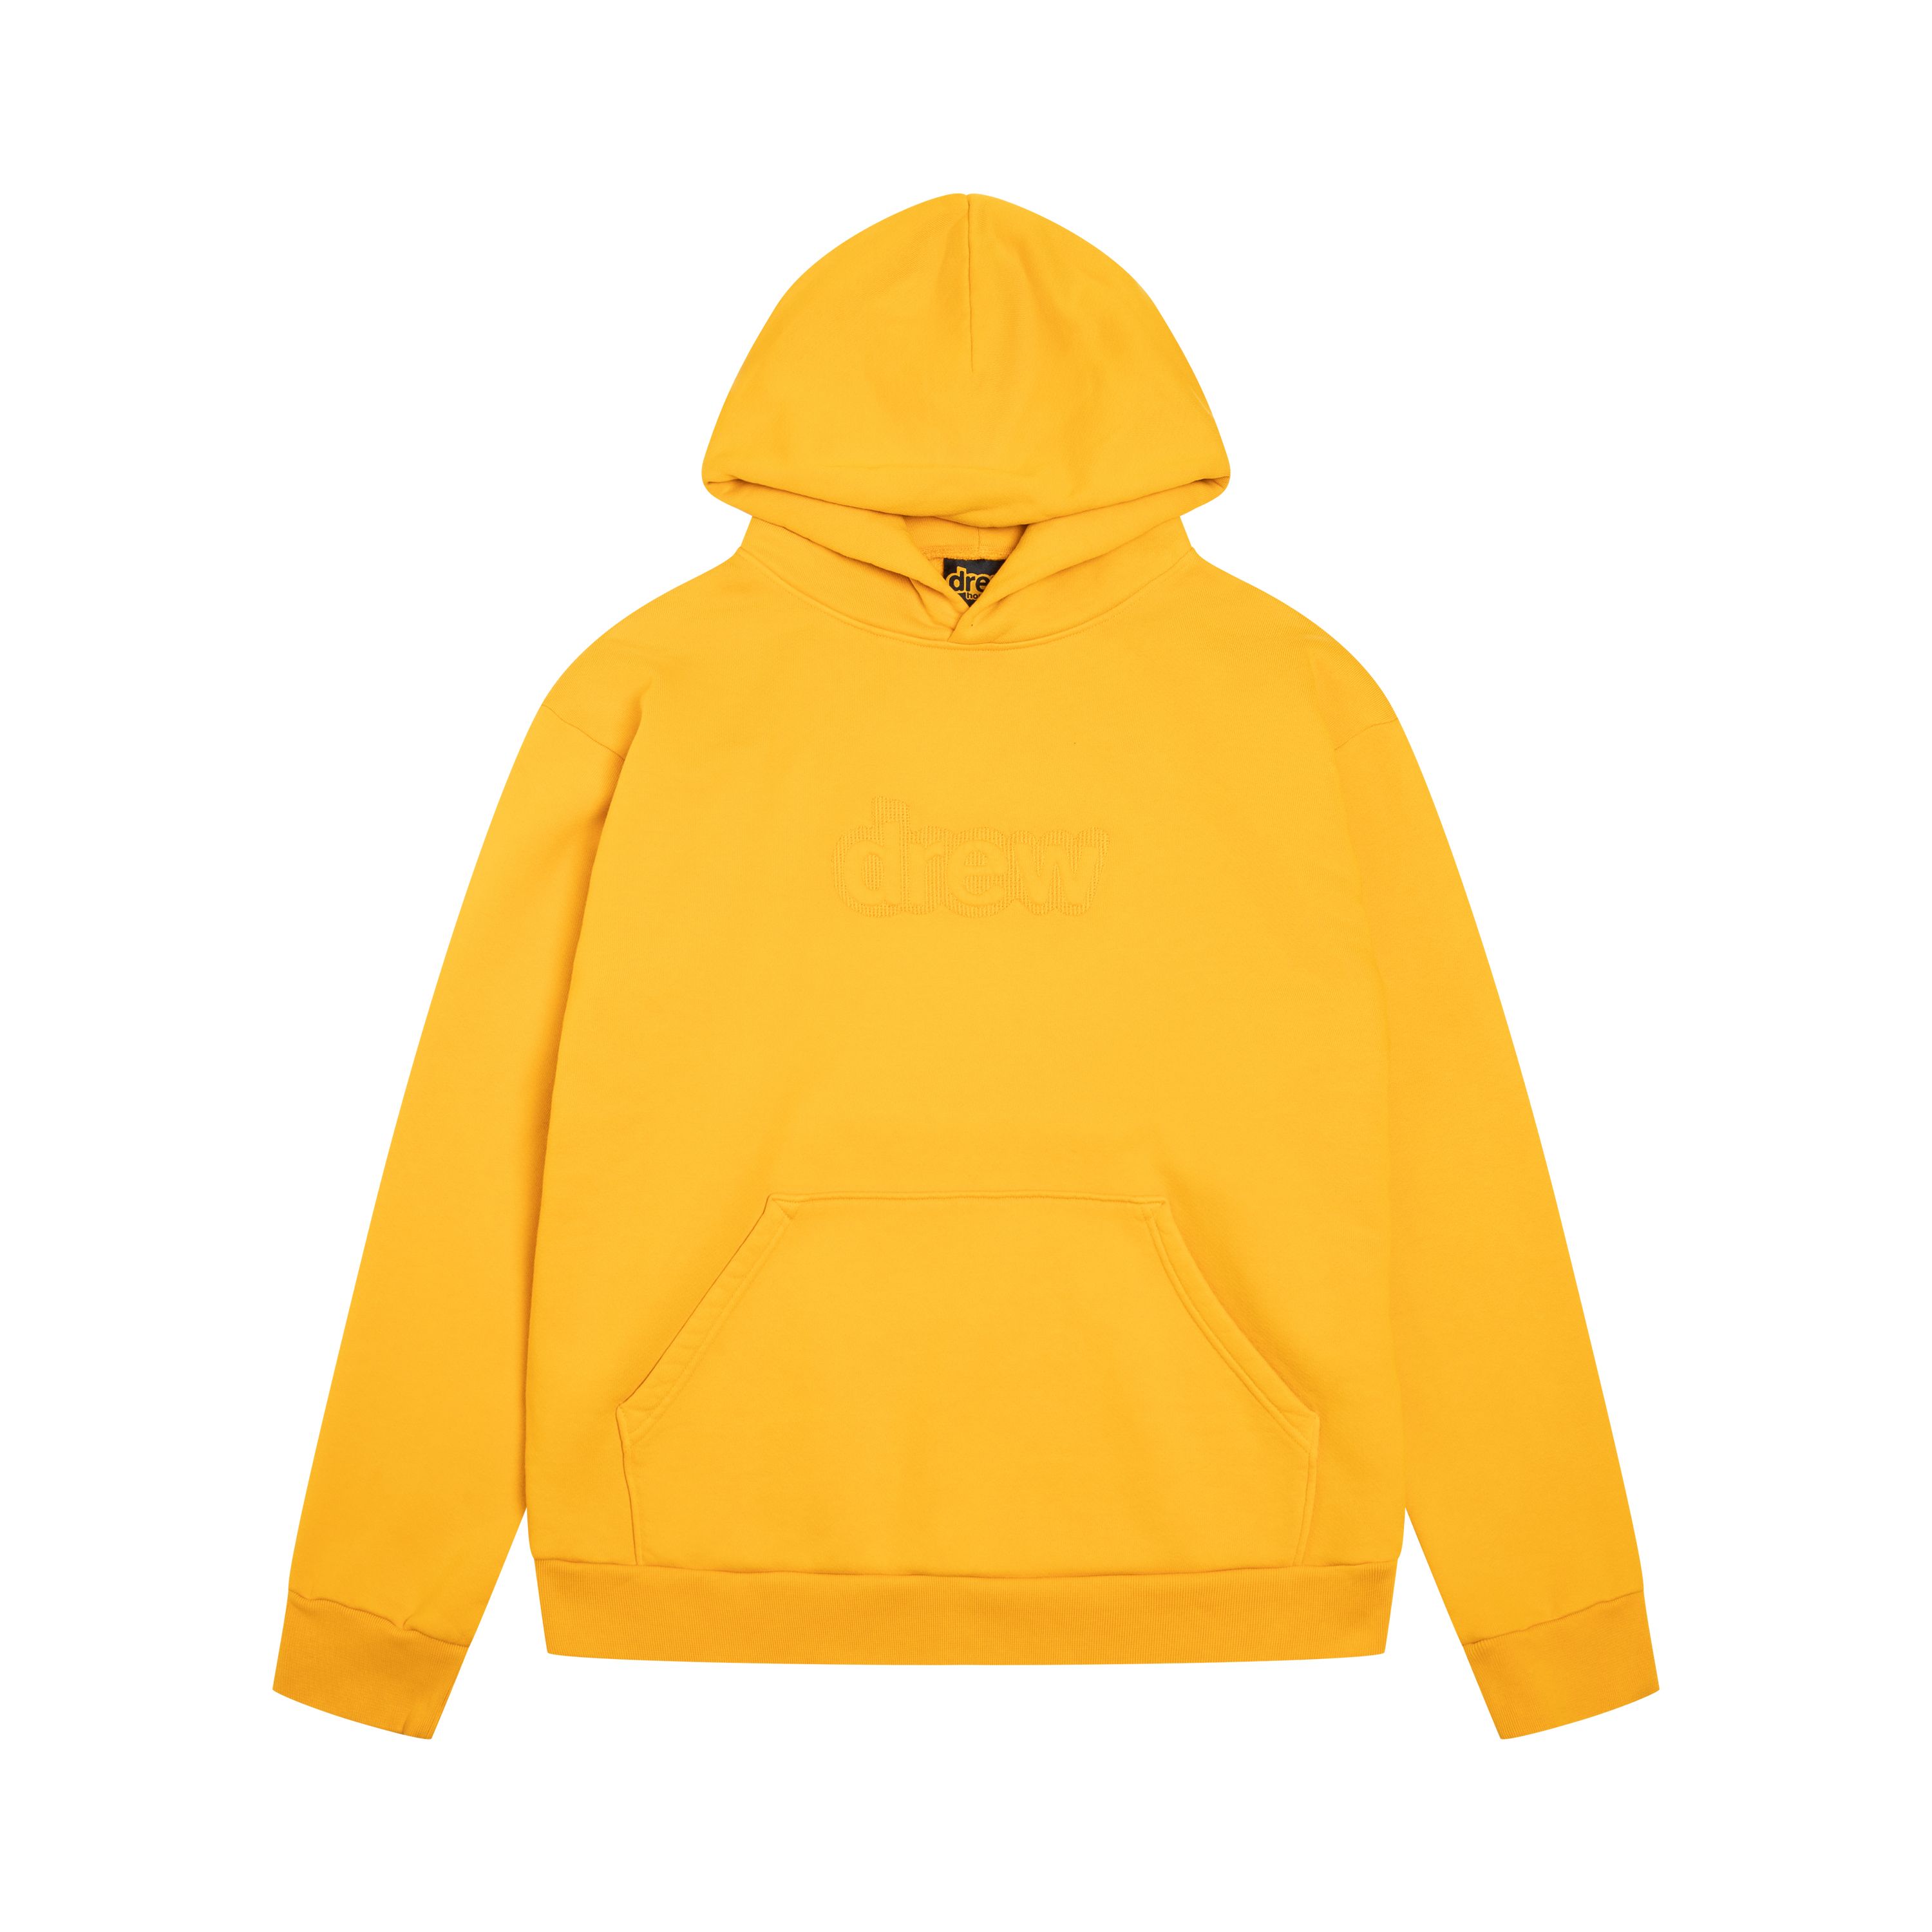 drew house skidoodle hoodie golden yellow